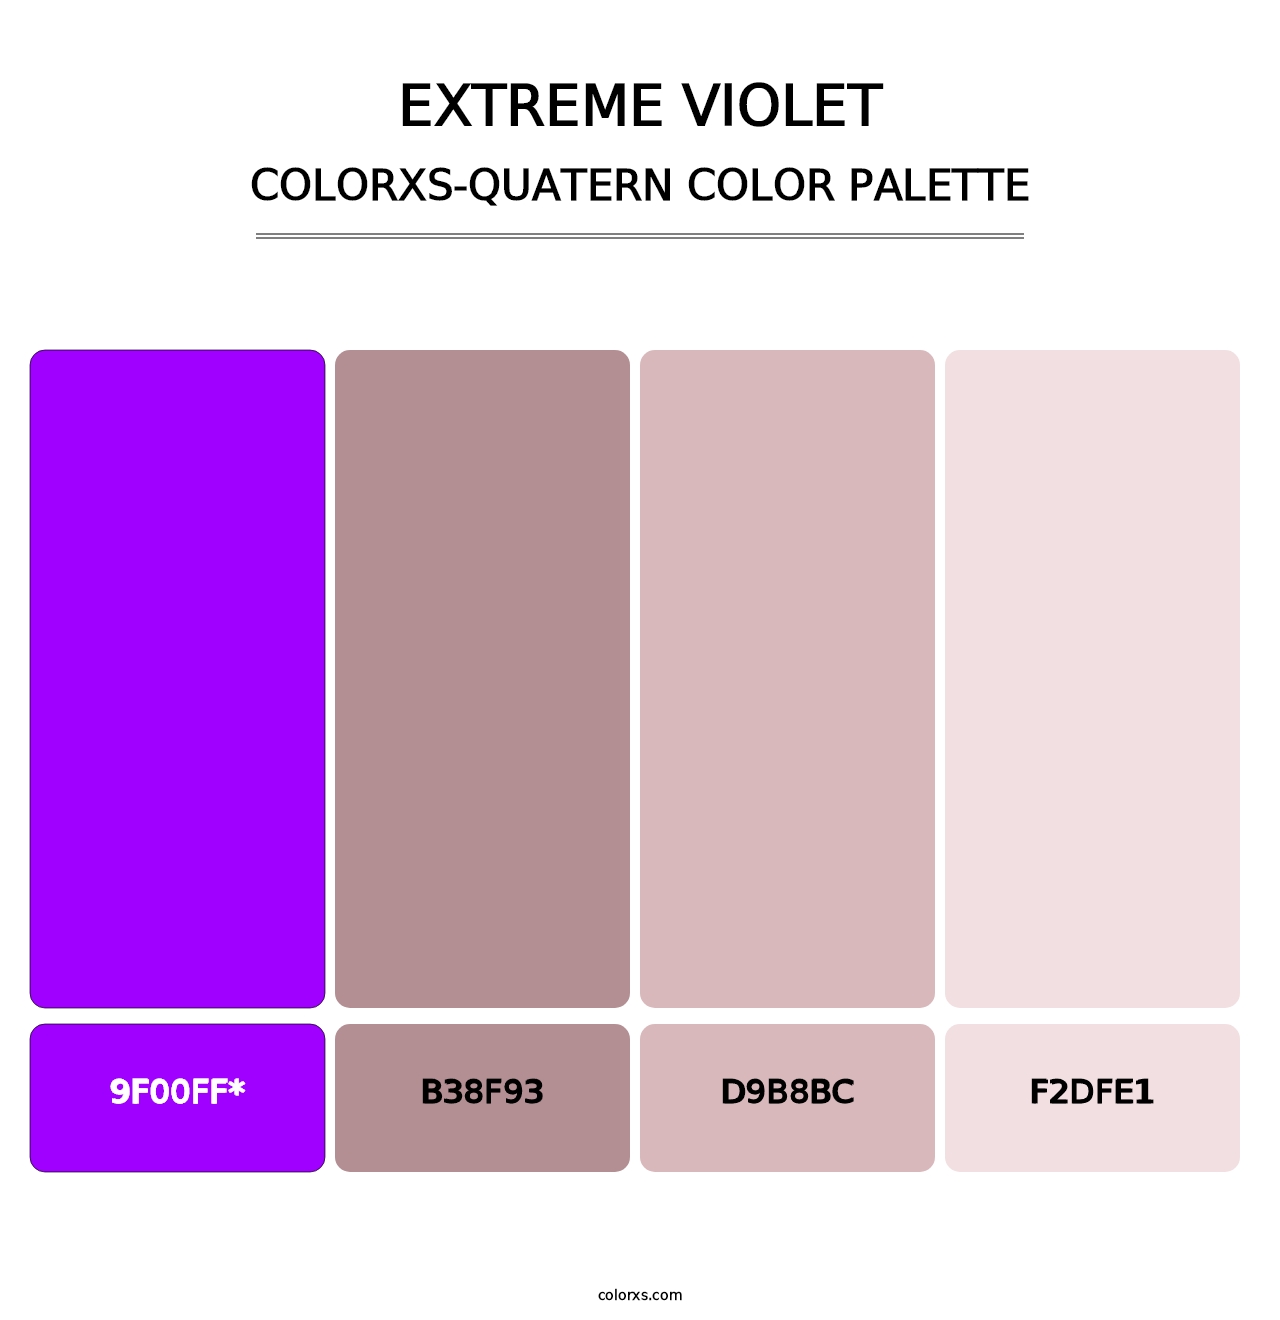 Extreme Violet - Colorxs Quatern Palette